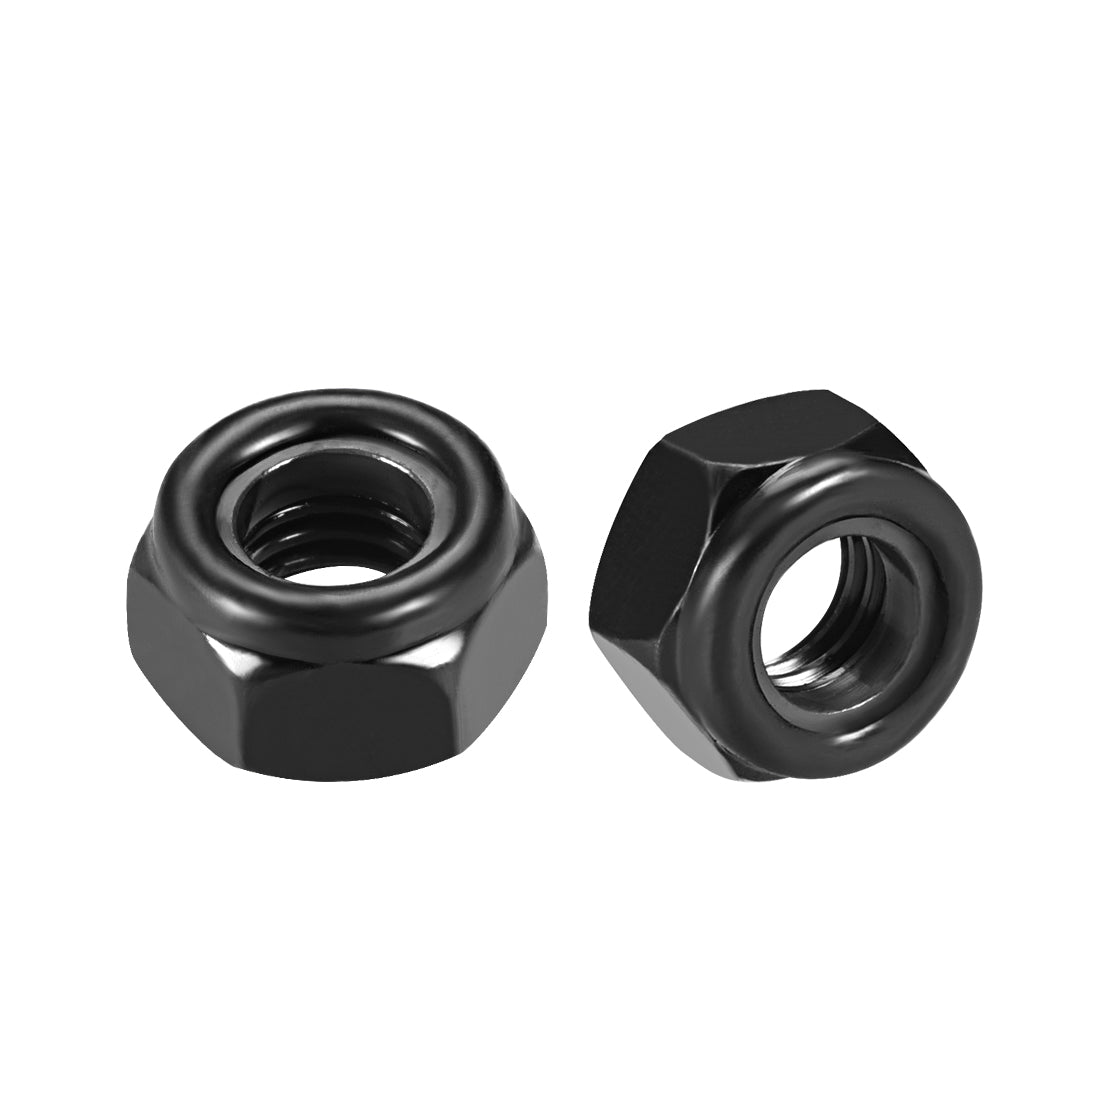 uxcell Uxcell M8x1.25mm Hex Lock Nuts Carbon Steel Nylon Insert Self-Lock Nuts, 50Pcs Black